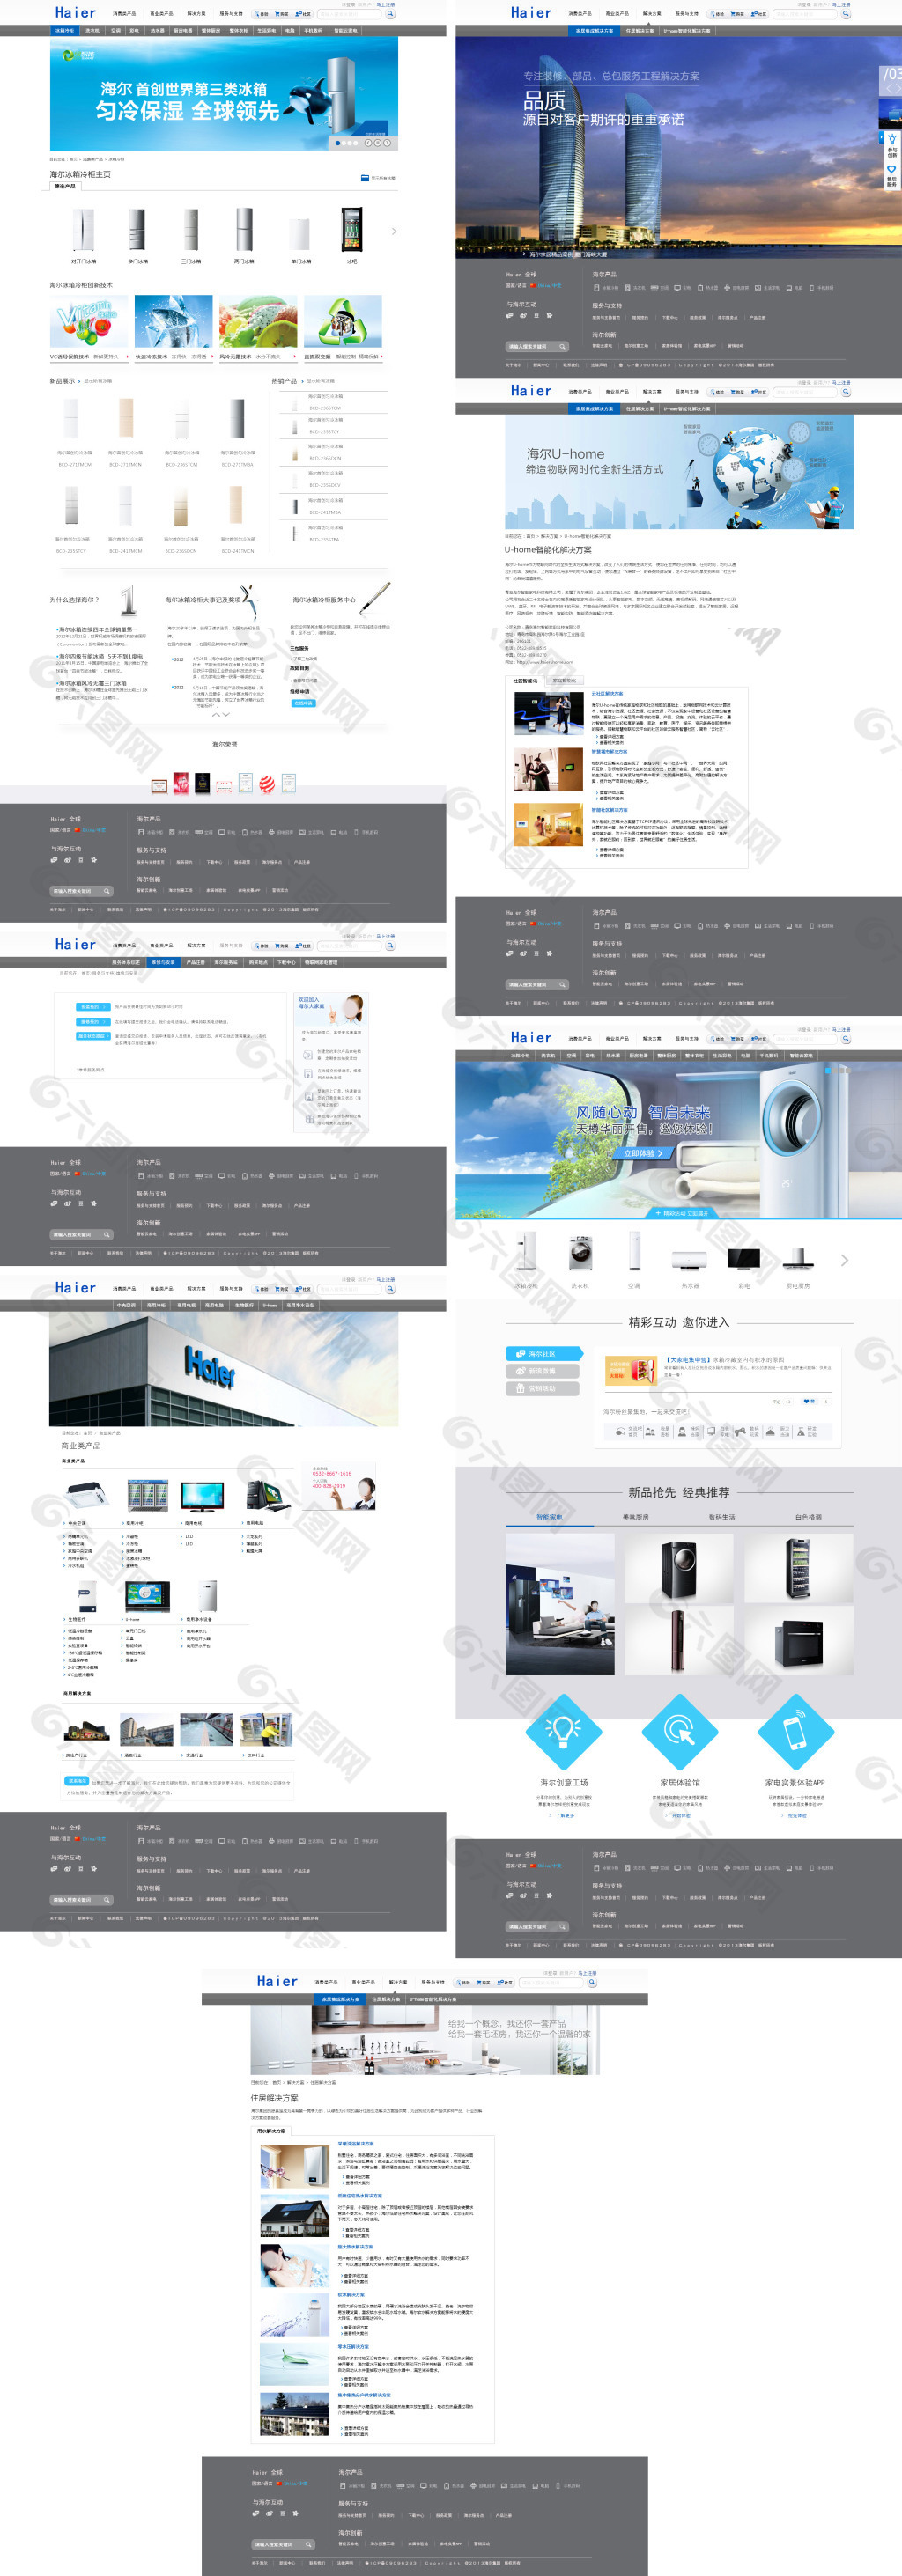 海尔冰箱冷柜系列网页设计